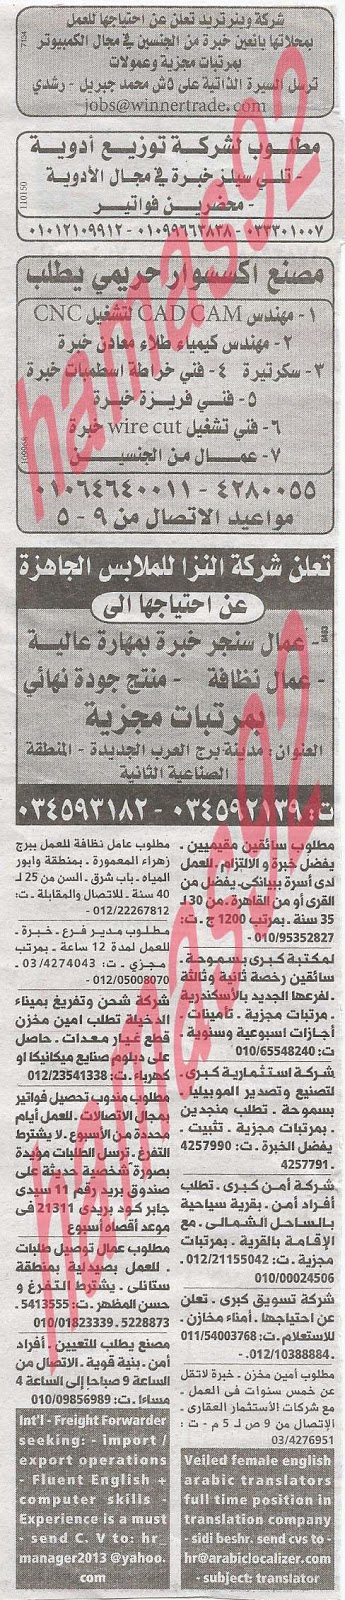 وظائف خالية فى جريدة الوسيط الاسكندرية الاحد 16-06-2013 %D9%88+%D8%B3+%D8%B3+4